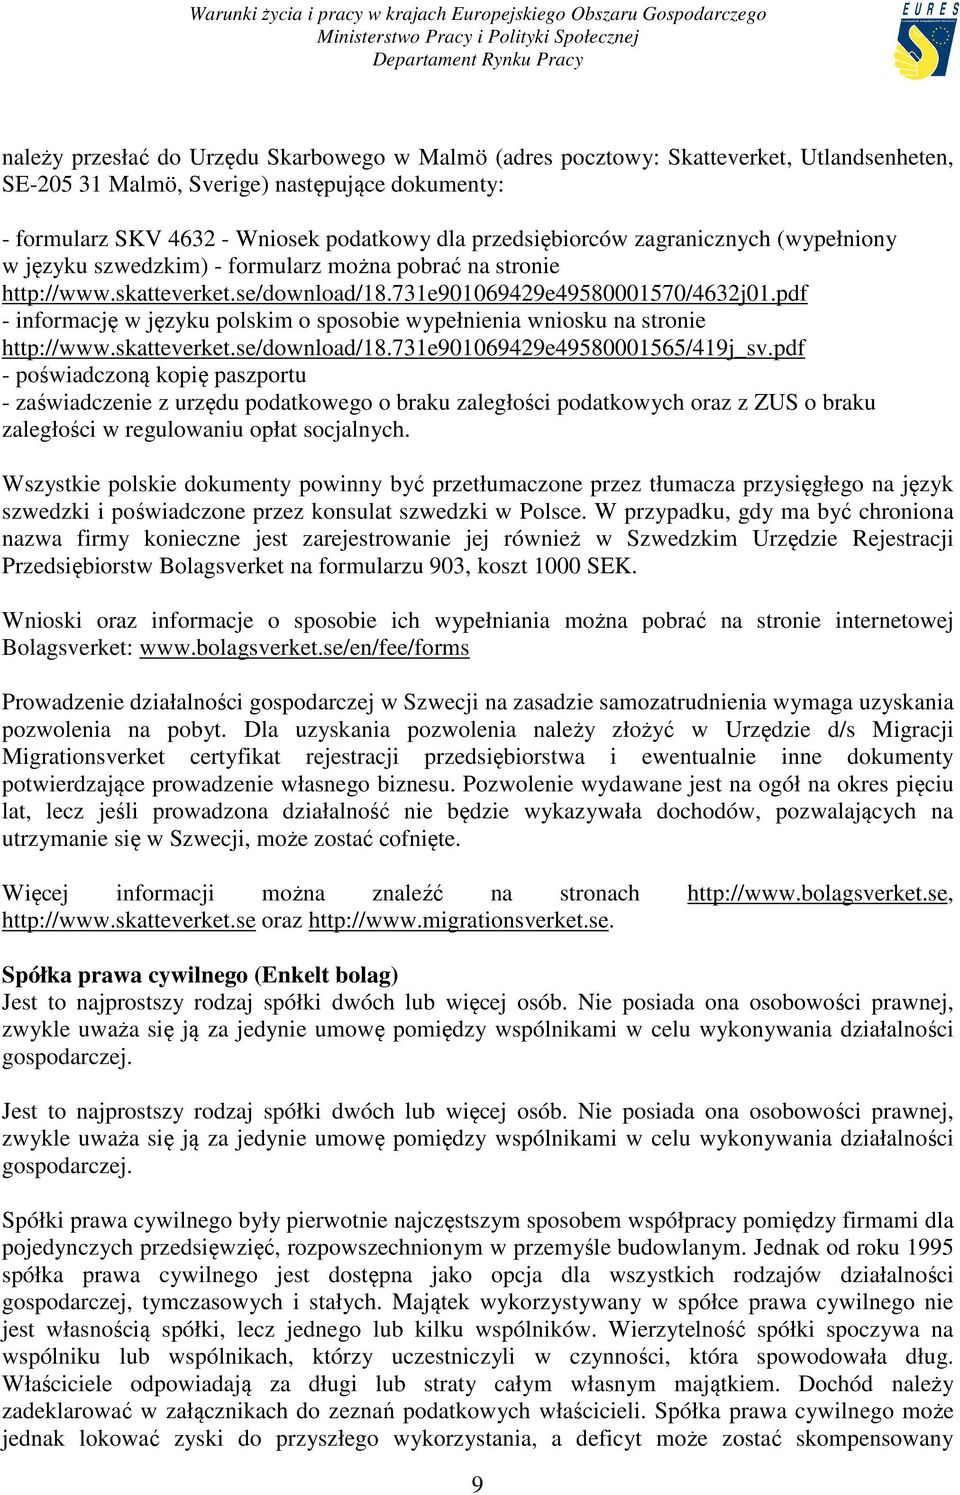 pdf - informację w języku polskim o sposobie wypełnienia wniosku na stronie http://www.skatteverket.se/download/18.731e901069429e49580001565/419j_sv.